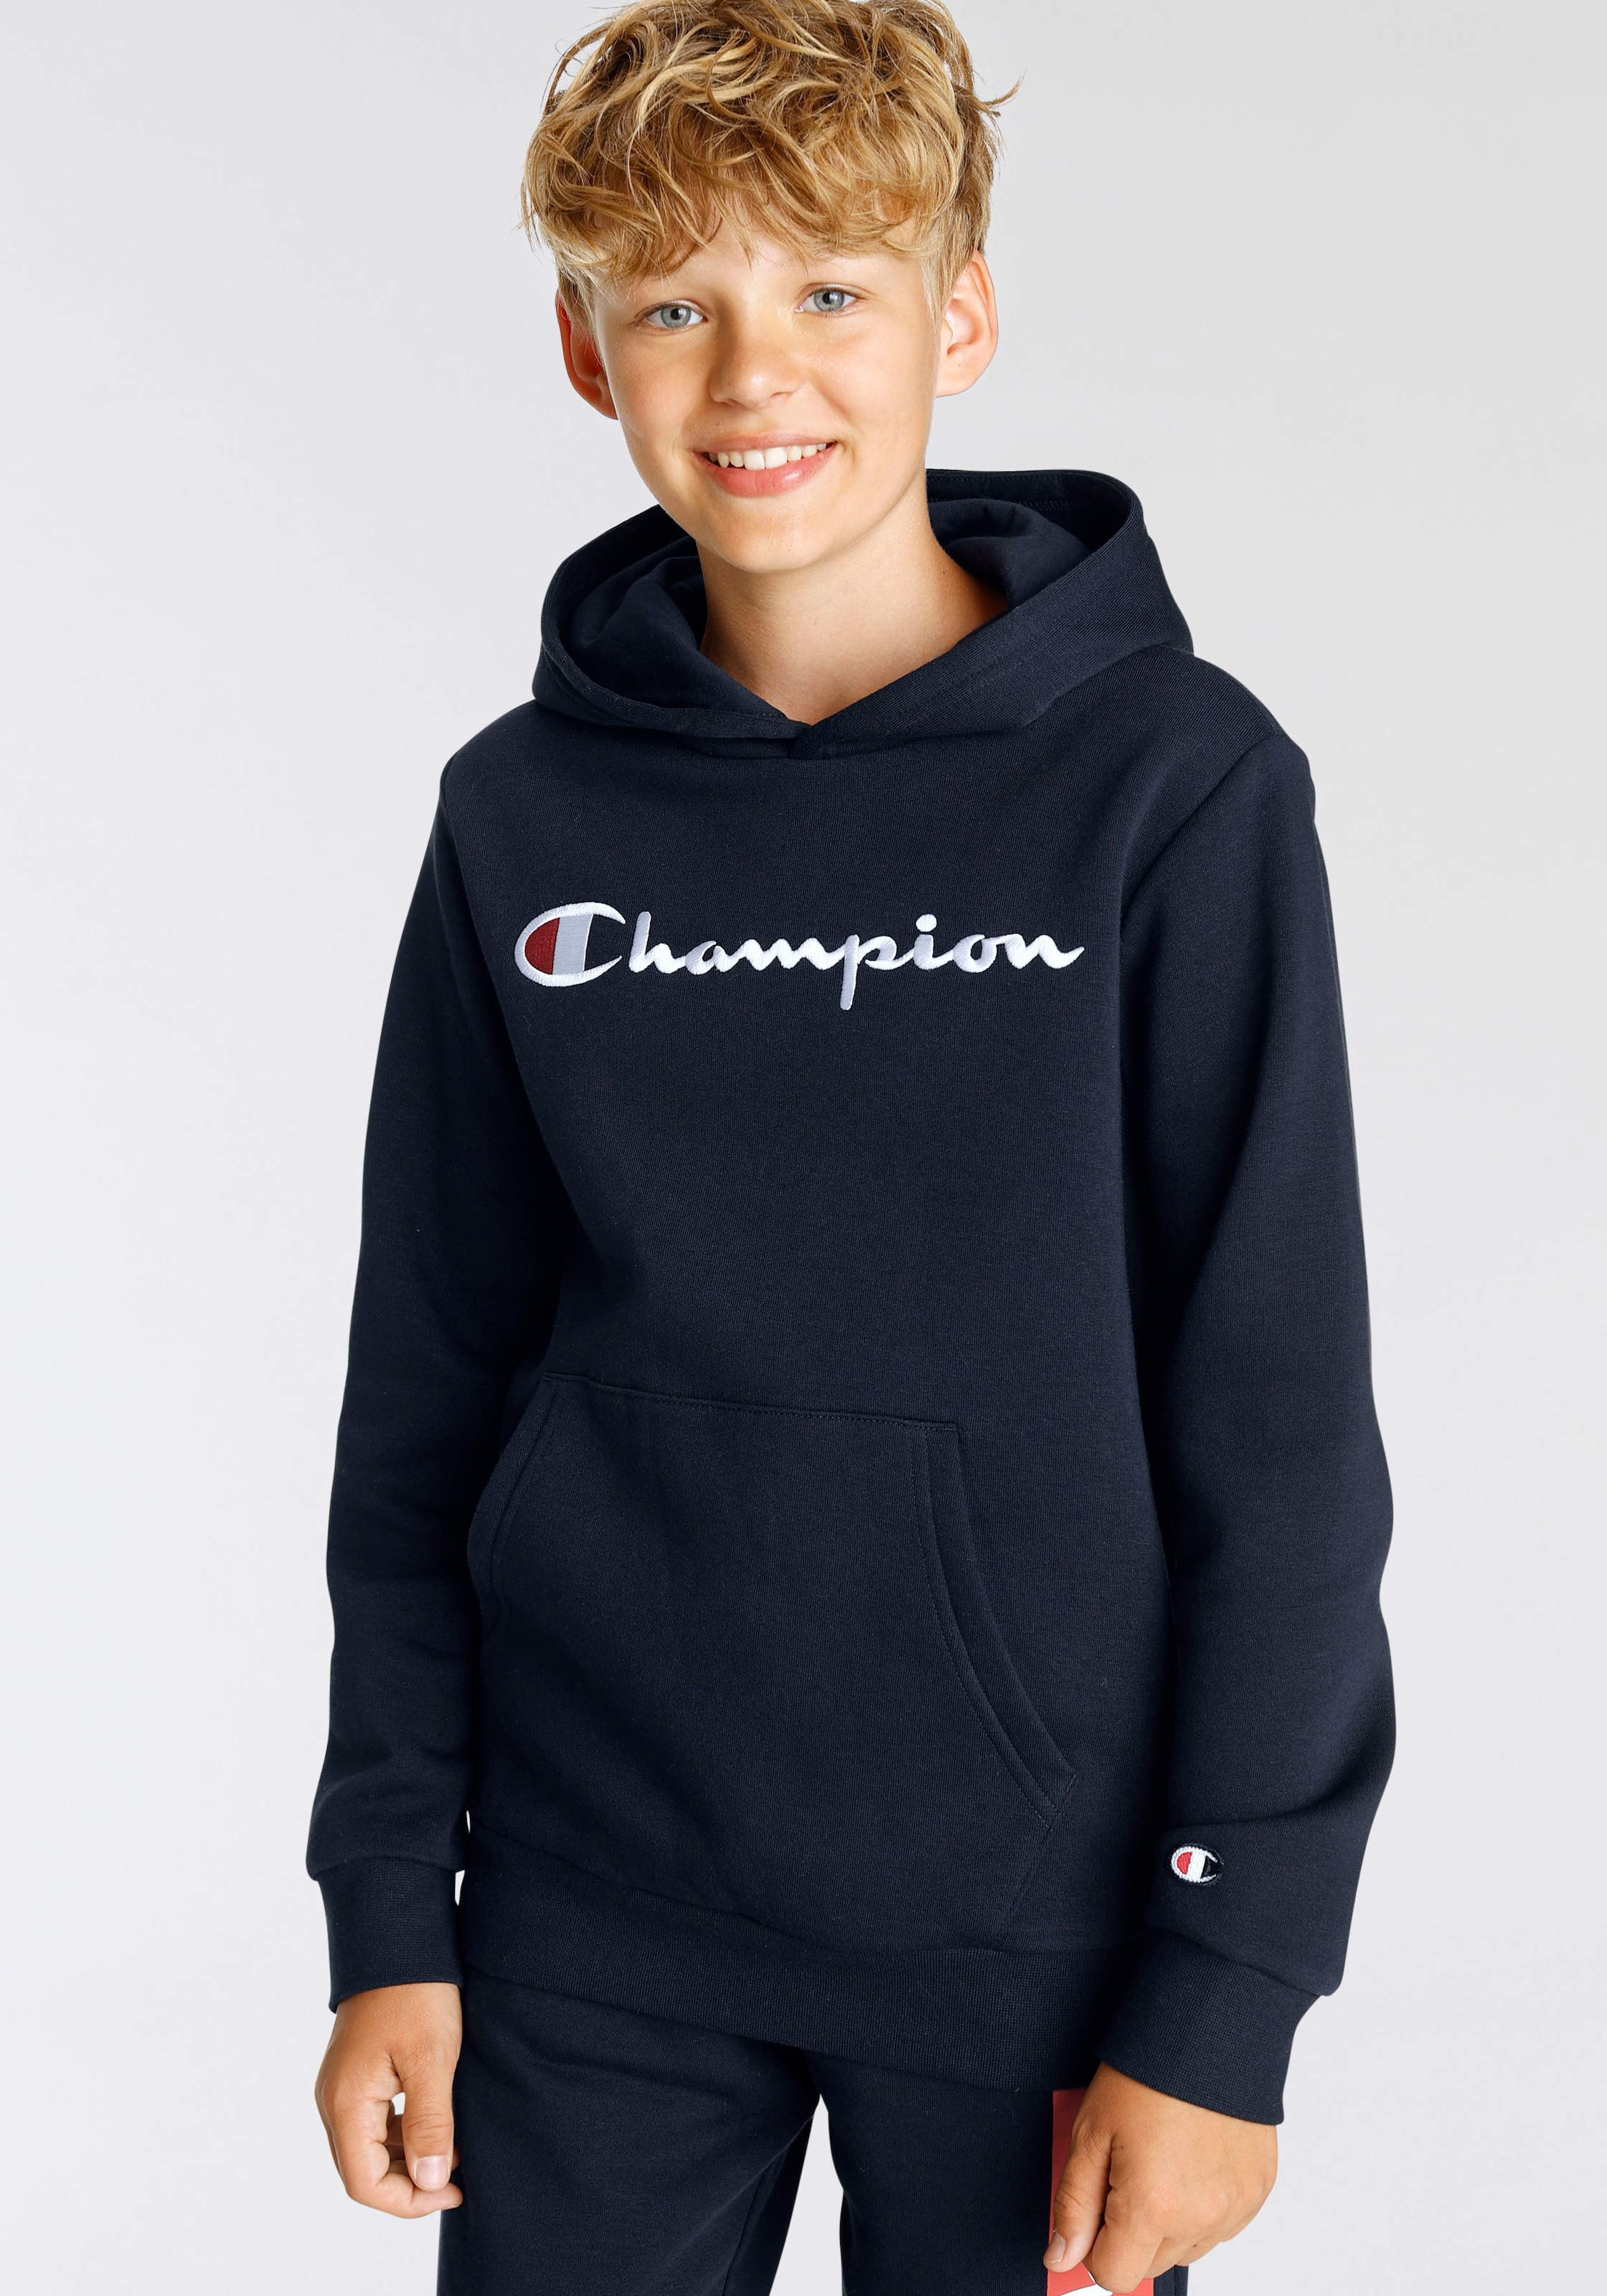 auf Champion für Entdecke »Classic - Kinder« Logo Sweatshirt large Hooded Sweatshirt